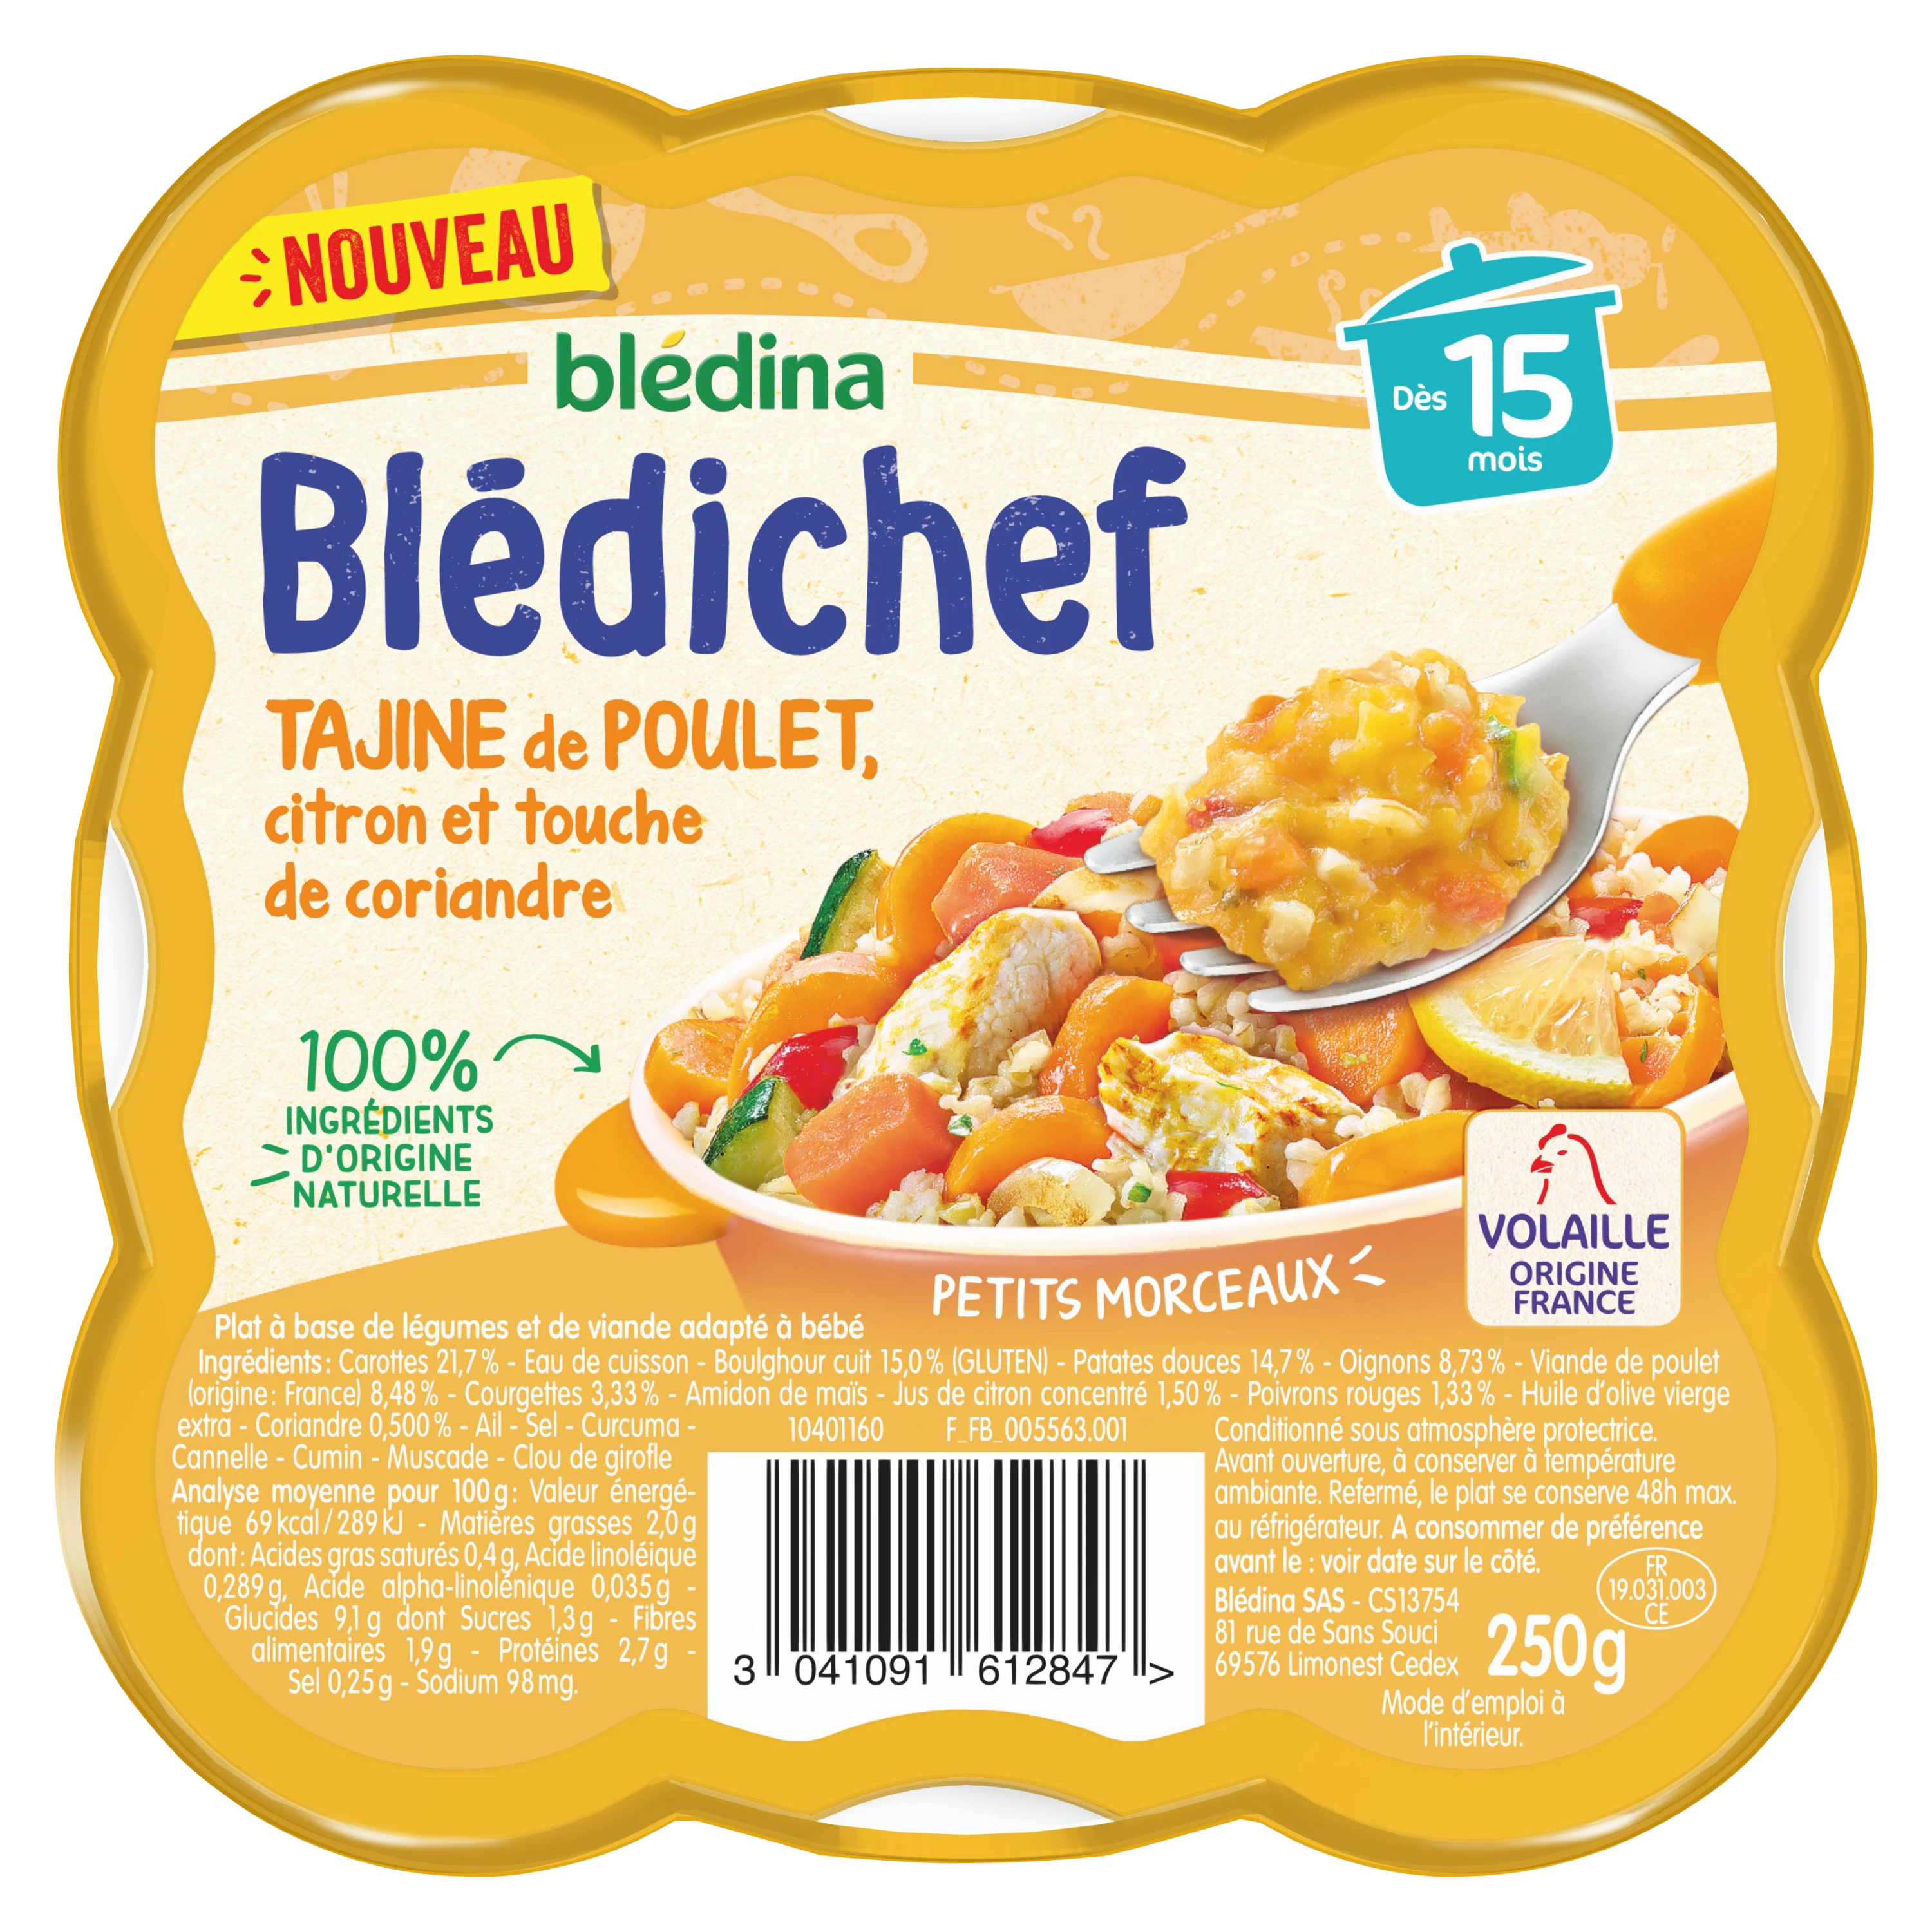 Blédichef Piattino per bebè a partire da 15 mesi di tajine di pollo al limone con un tocco di coriandolo 250g - BLEDINA